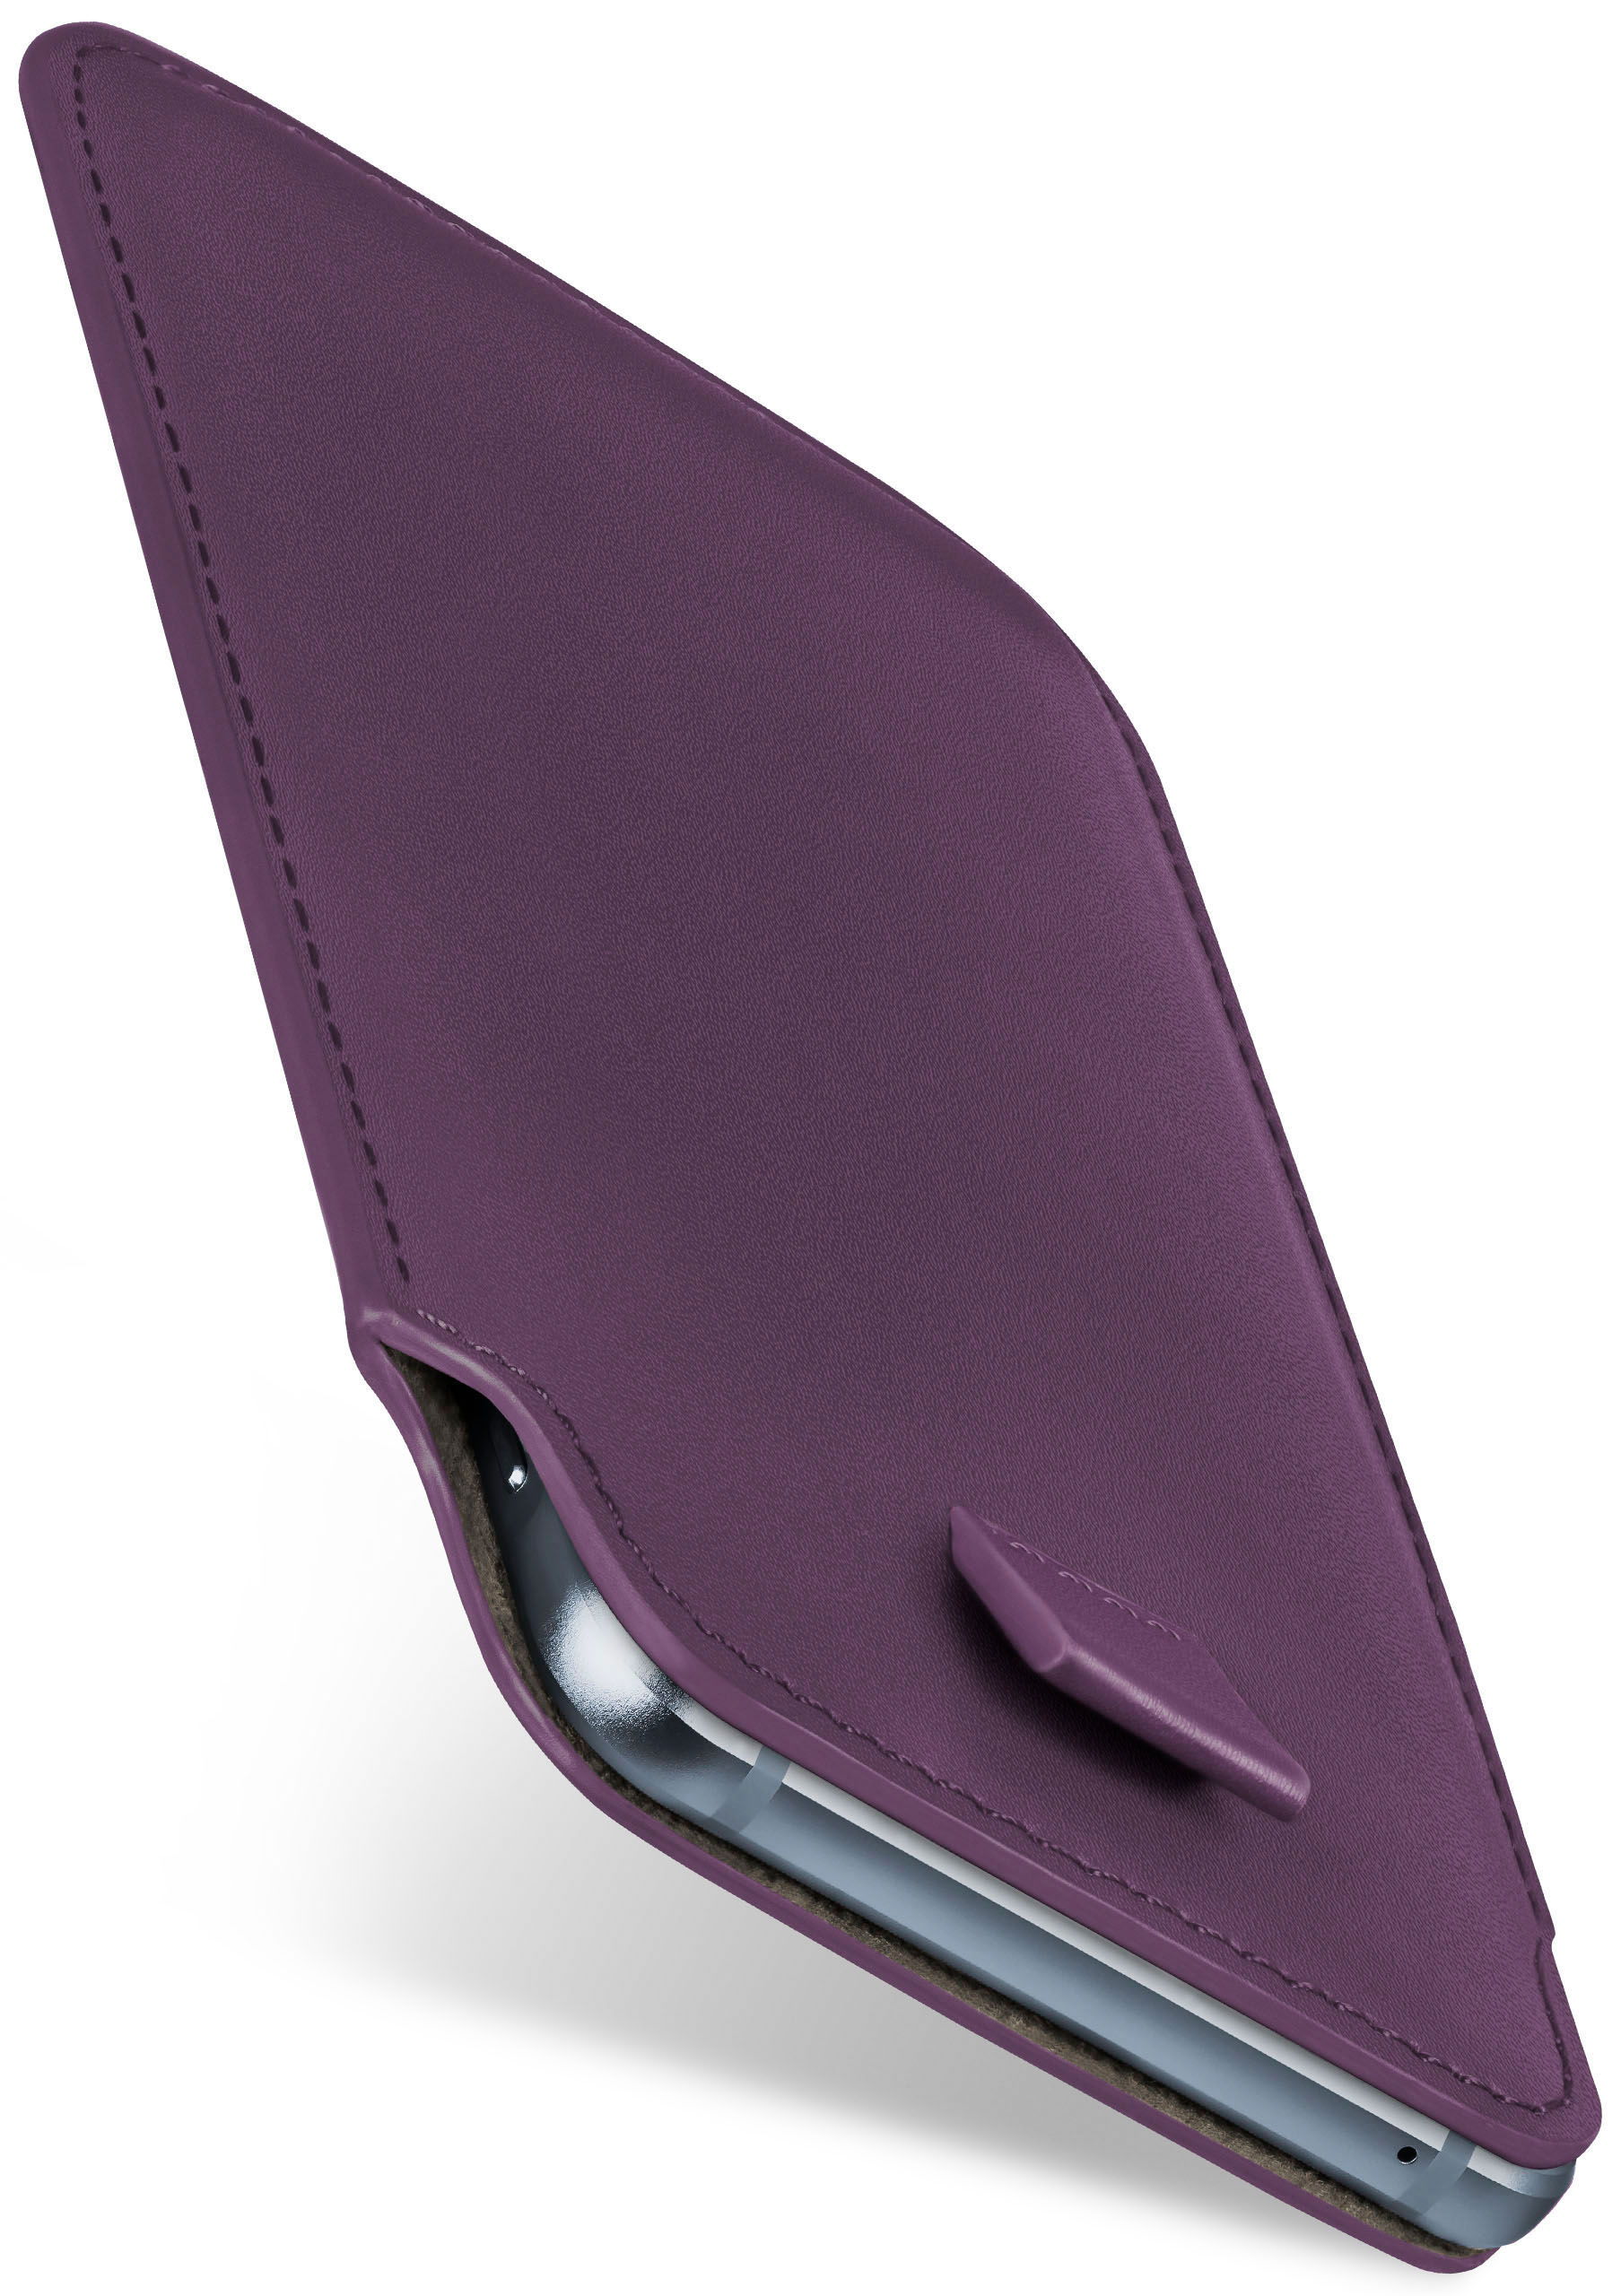 MOEX Slide Case, Doro, Cover, Indigo-Violet 8040, Full